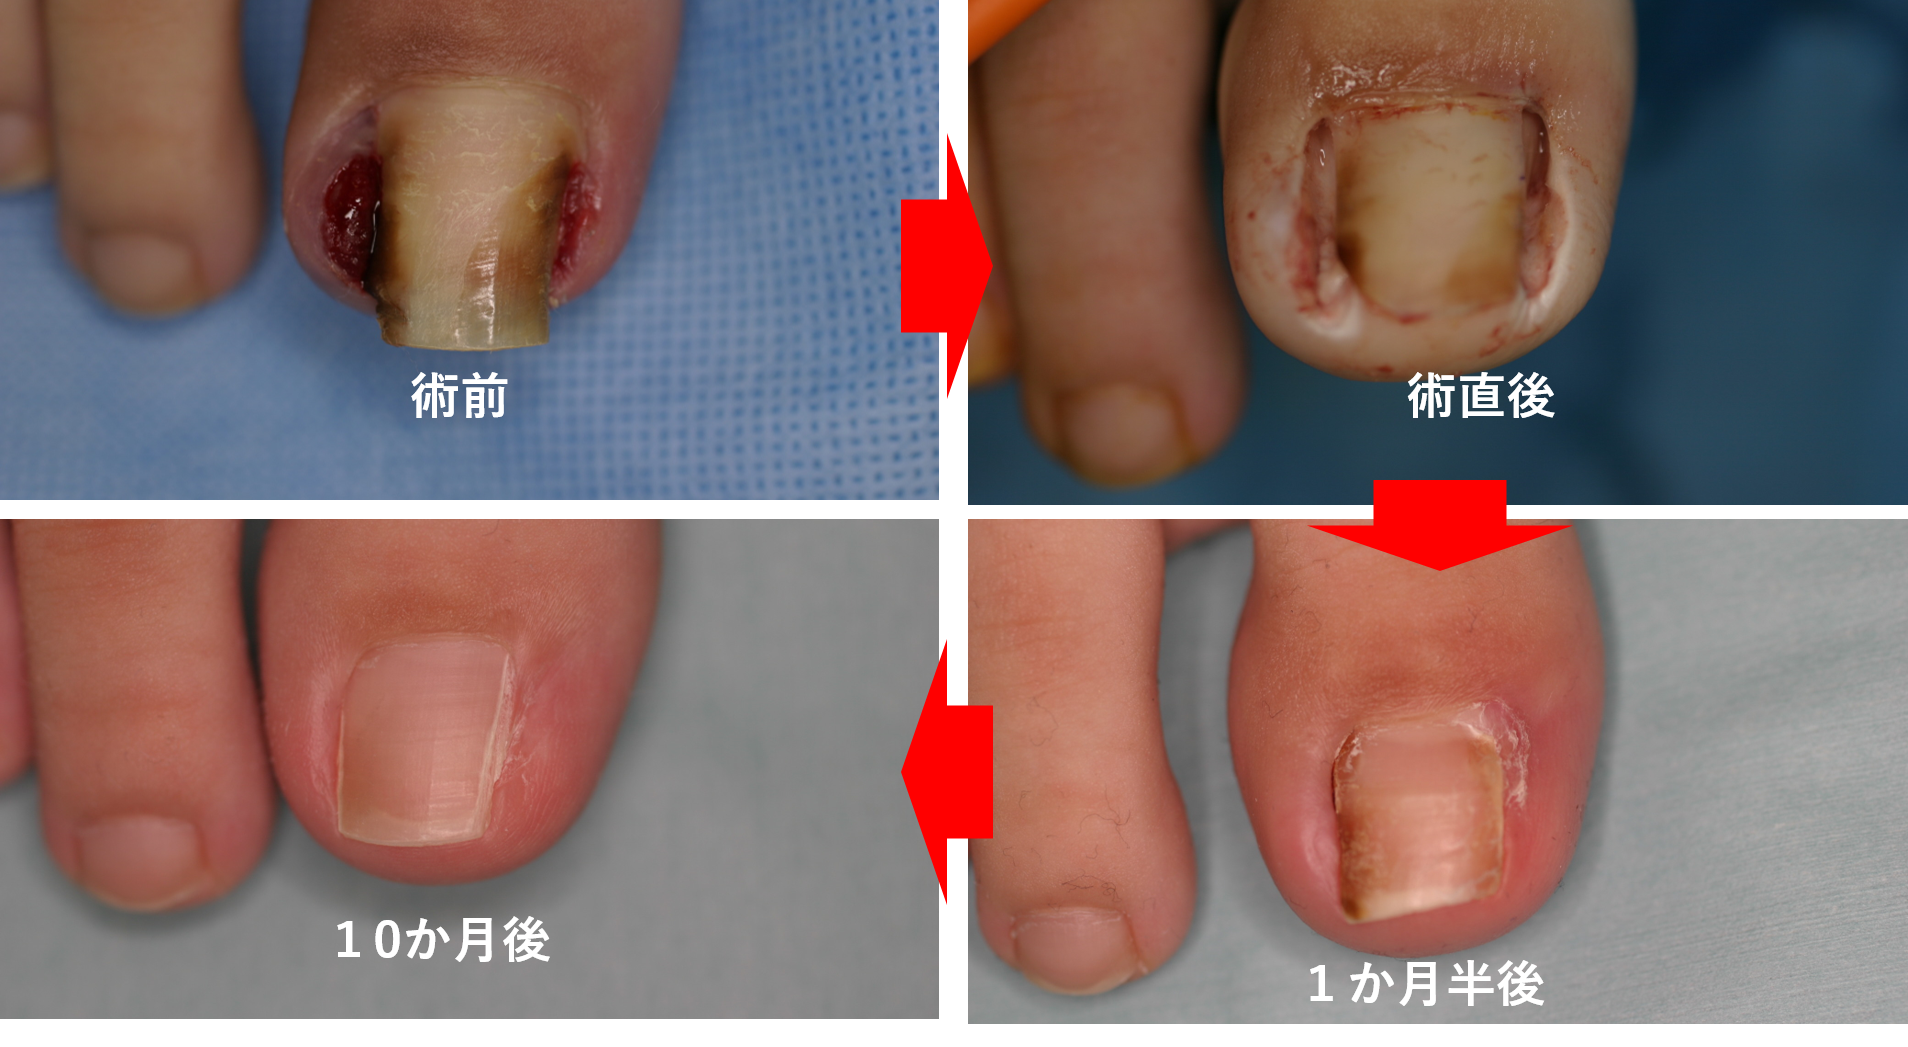 爪の異常、巻き爪・陥入爪治療 - 保険診療内容のご案内